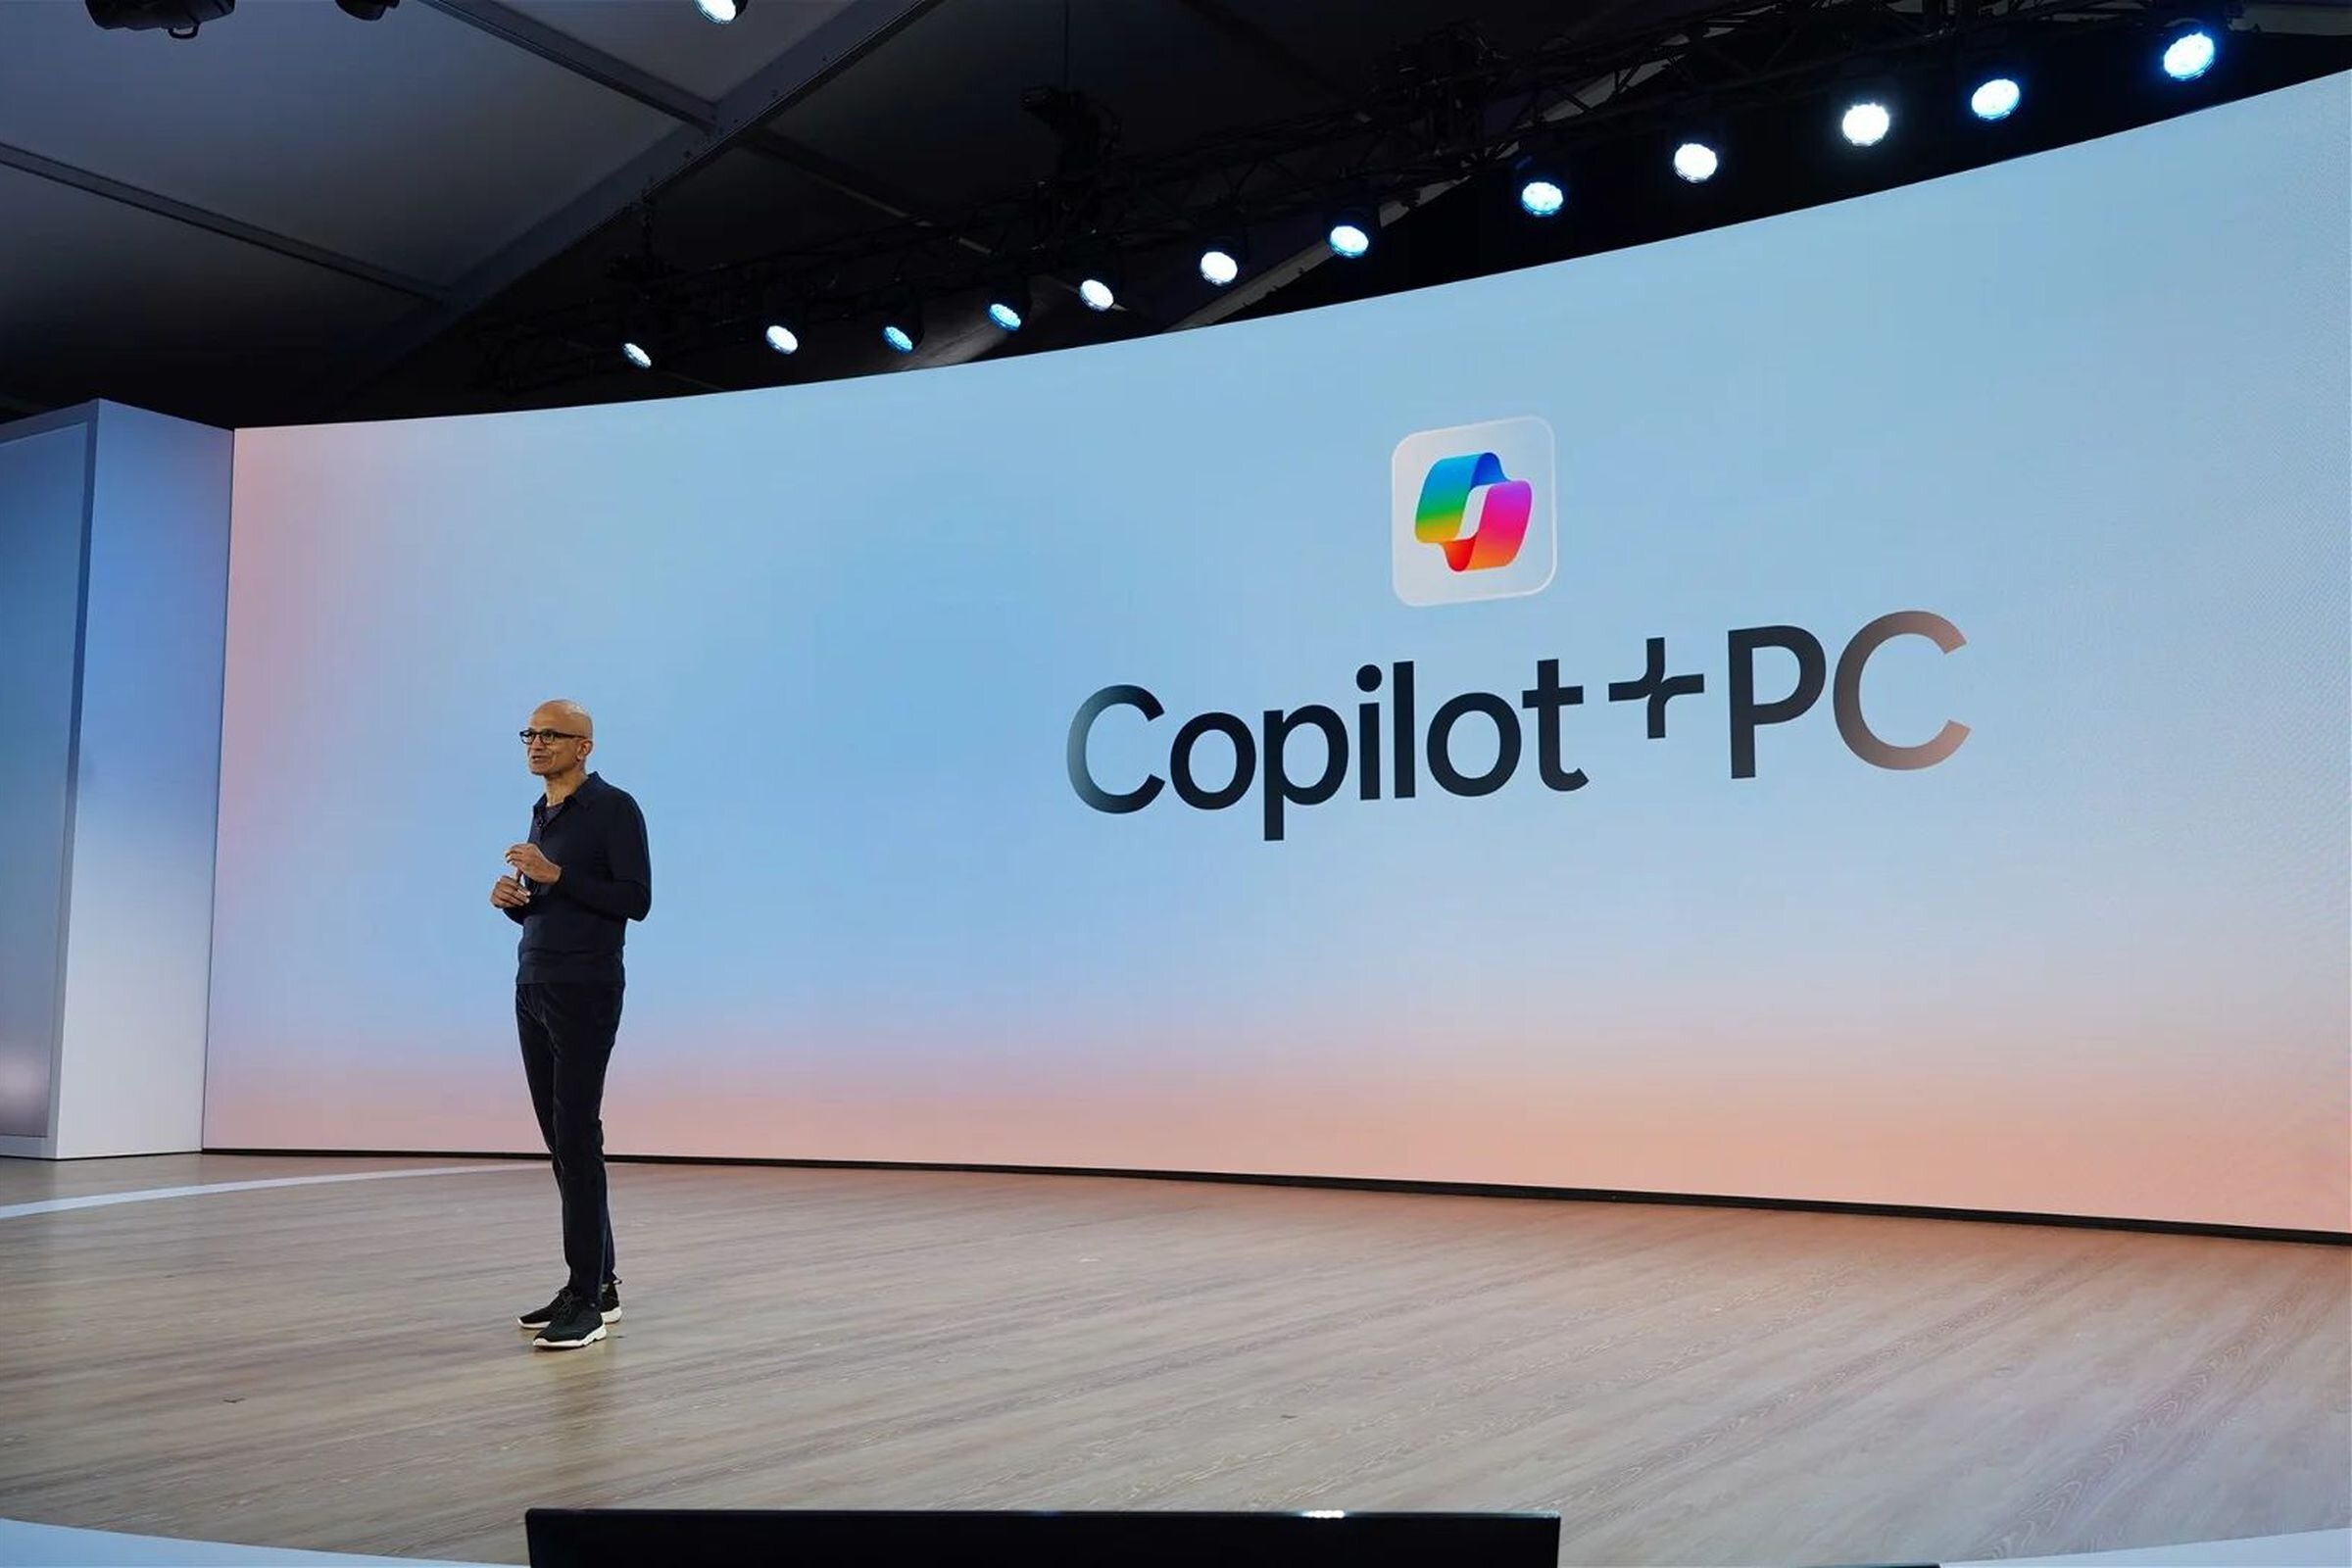 Η Microsoft αποκαλύπτει τα "Copilot Plus PCs": Το μέλλον των φορητών υπολογιστών με τεχνητή νοημοσύνη